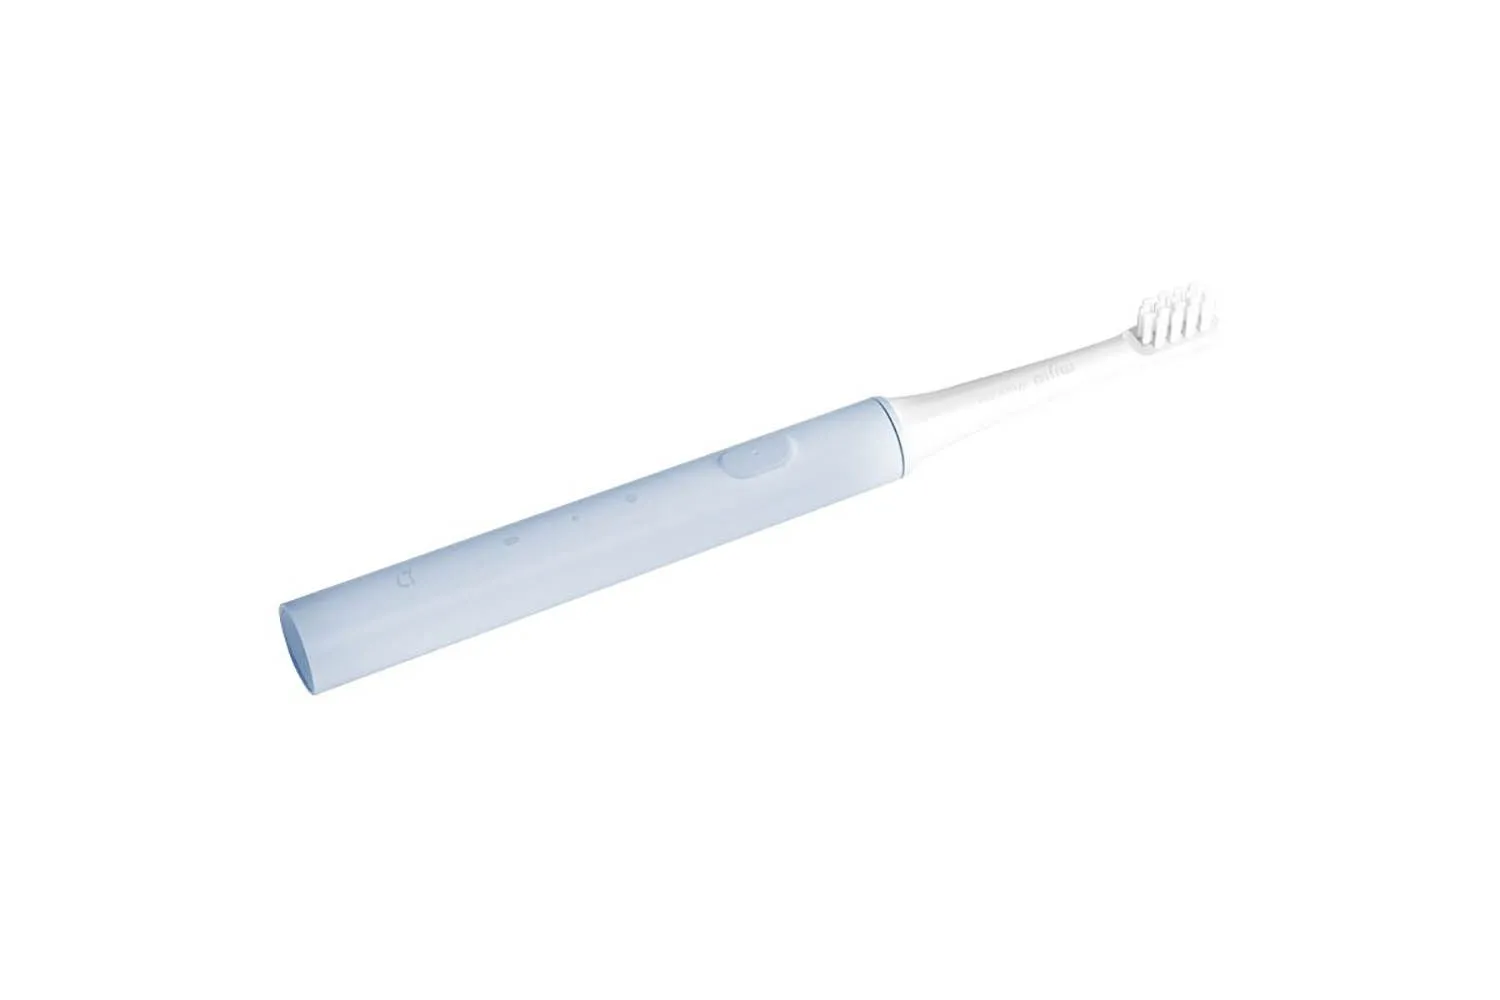 Электрическая зубная щетка Xiaomi Mijia Acoustic Wave Toothbrush T100 (серый)